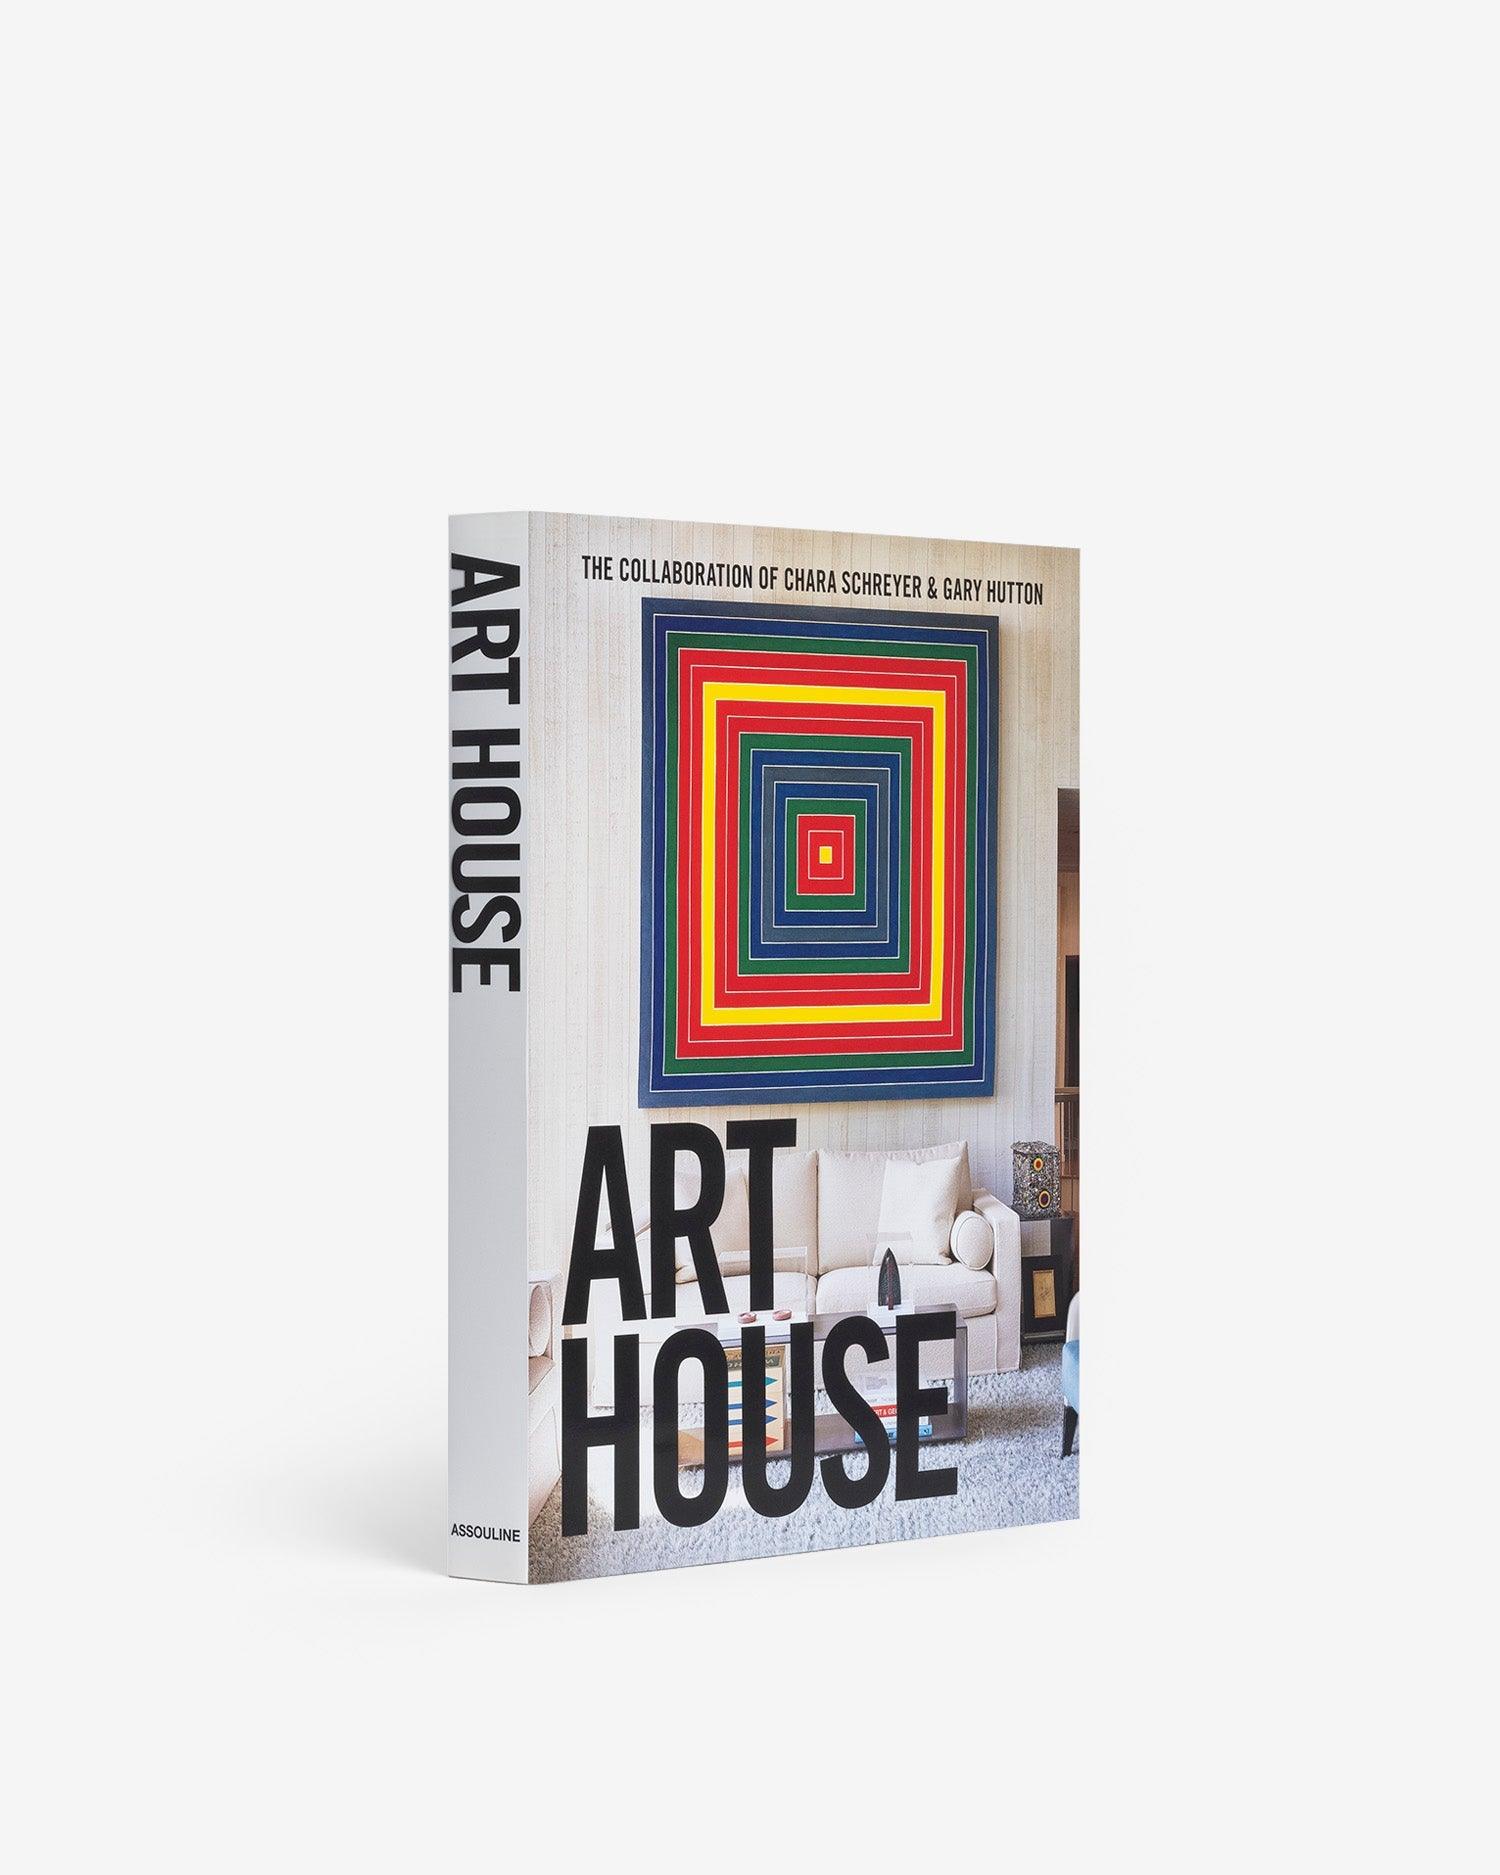 Art House book by Chara Schreyer and Gary Hutton | ASSOULINE